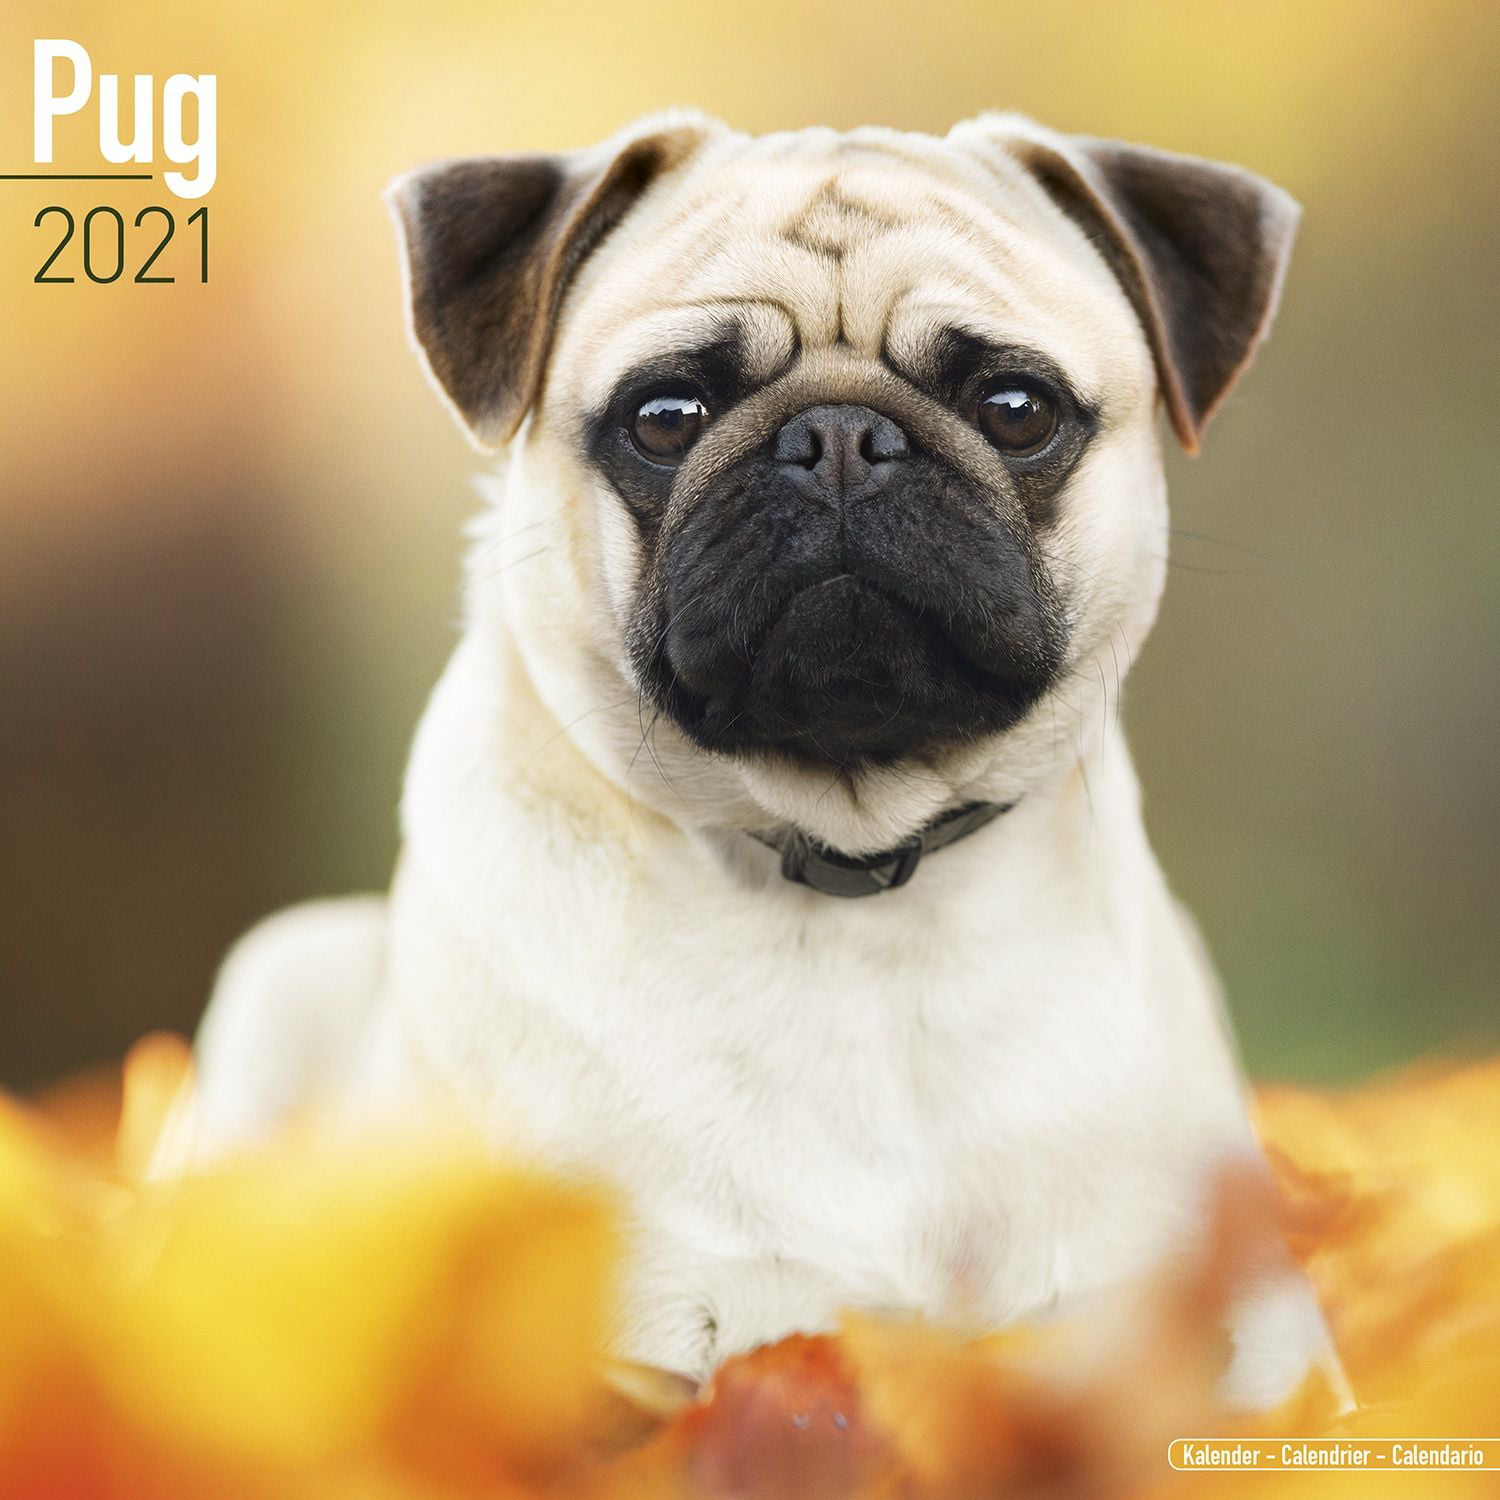 Pug Calendar 2021 Pug Dog Breed Calendar Pugs Premium Wall Calendar 2021 Walmart Com Walmart Com